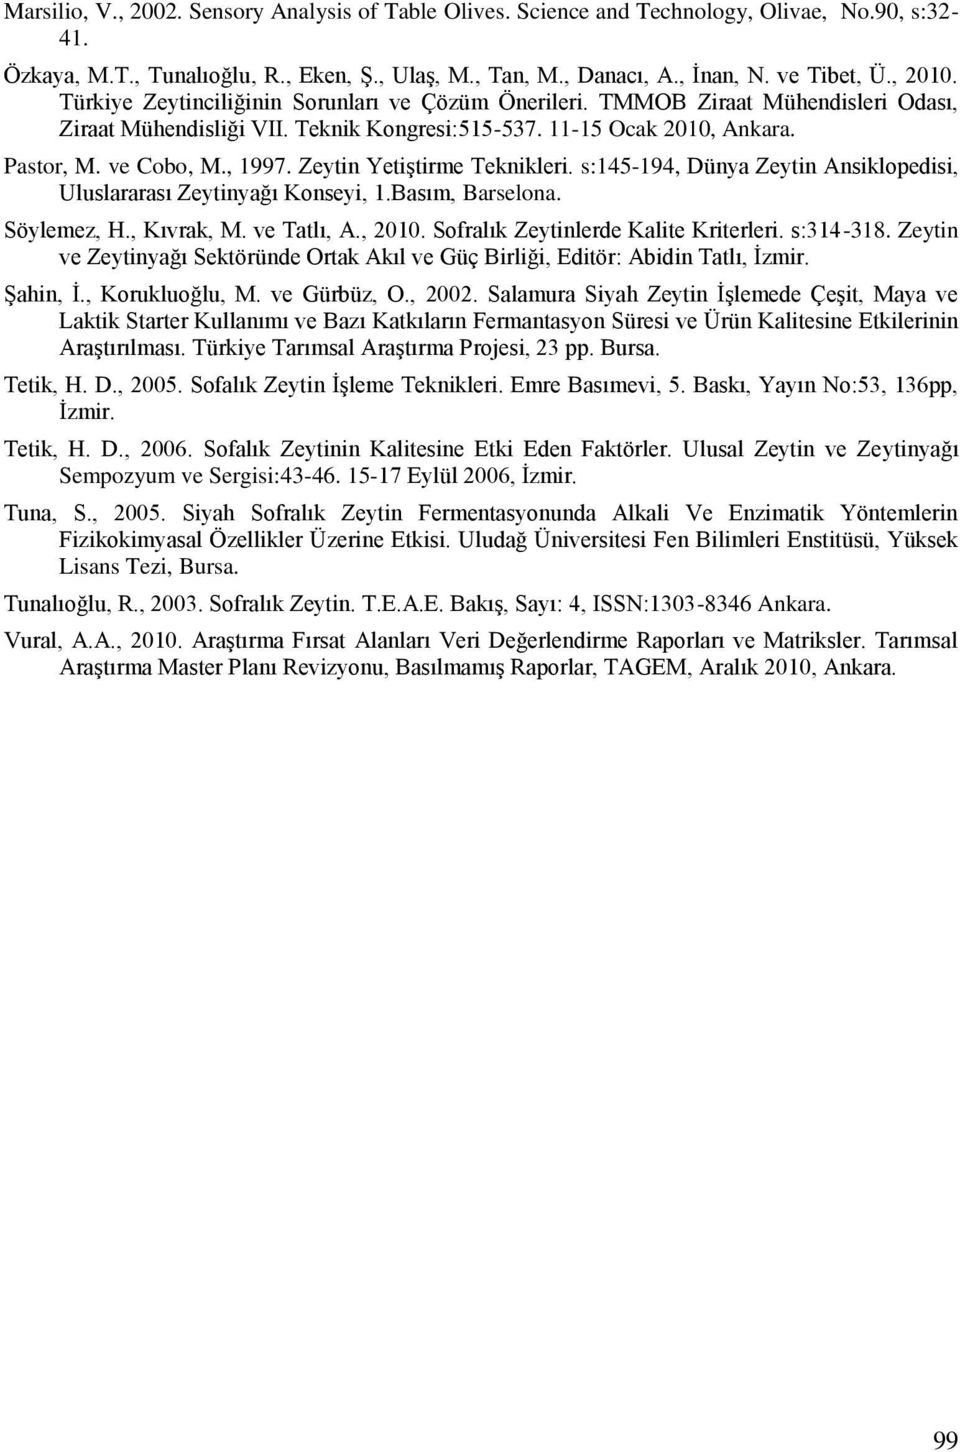 Zeytin Yetiştirme Teknikleri. s:145-194, Dünya Zeytin Ansiklopedisi, Uluslararası Zeytinyağı Konseyi, 1.Basım, Barselona. Söylemez, H., Kıvrak, M. ve Tatlı, A., 2010.